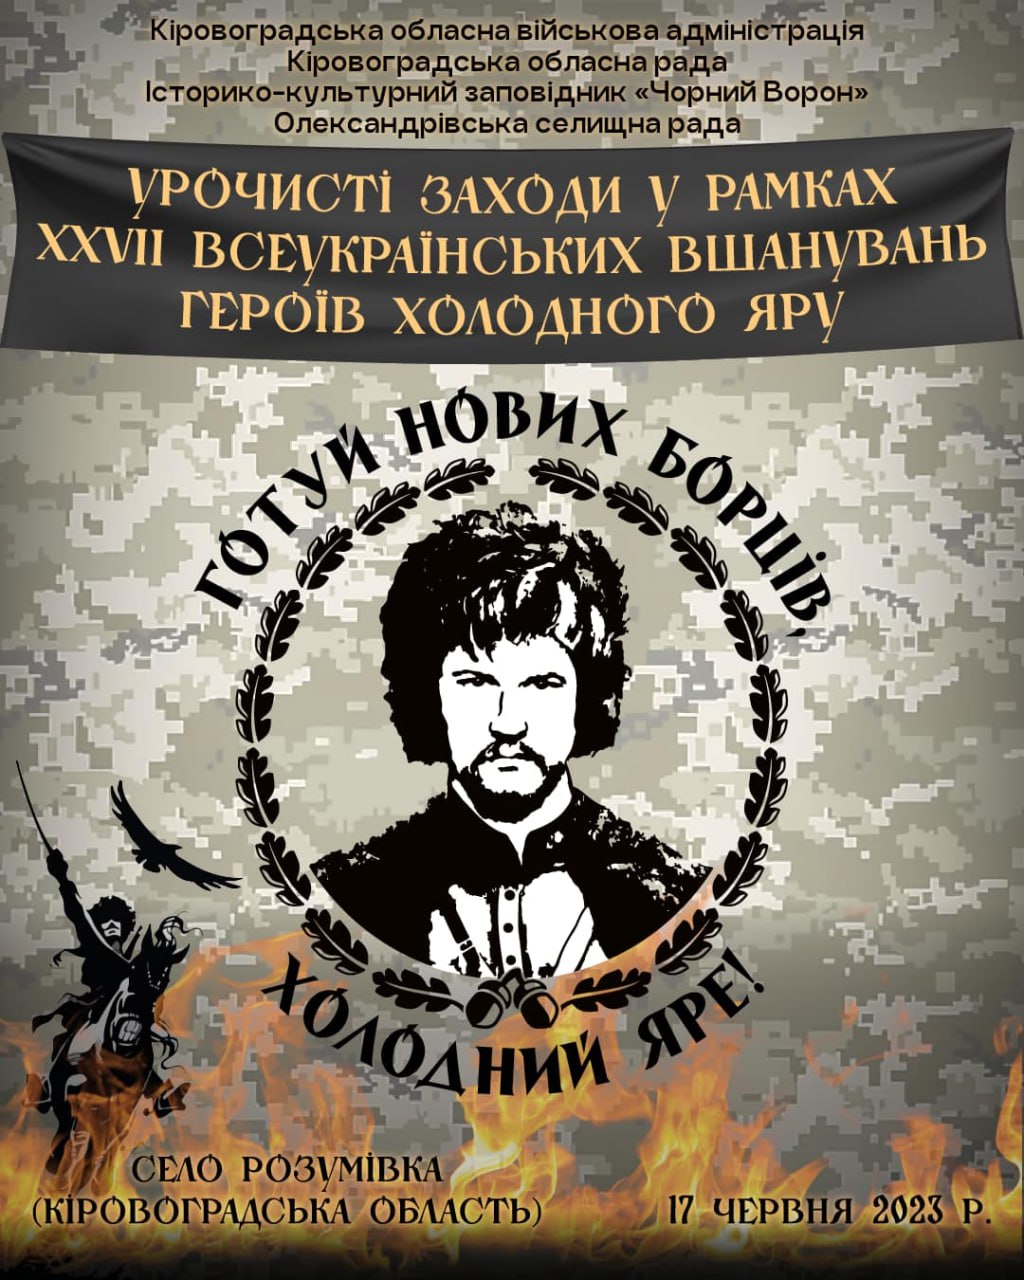 Завтра на Кіровоградщині відбудеться вшанування героїв Холодного Яру. ПРОГРАМА